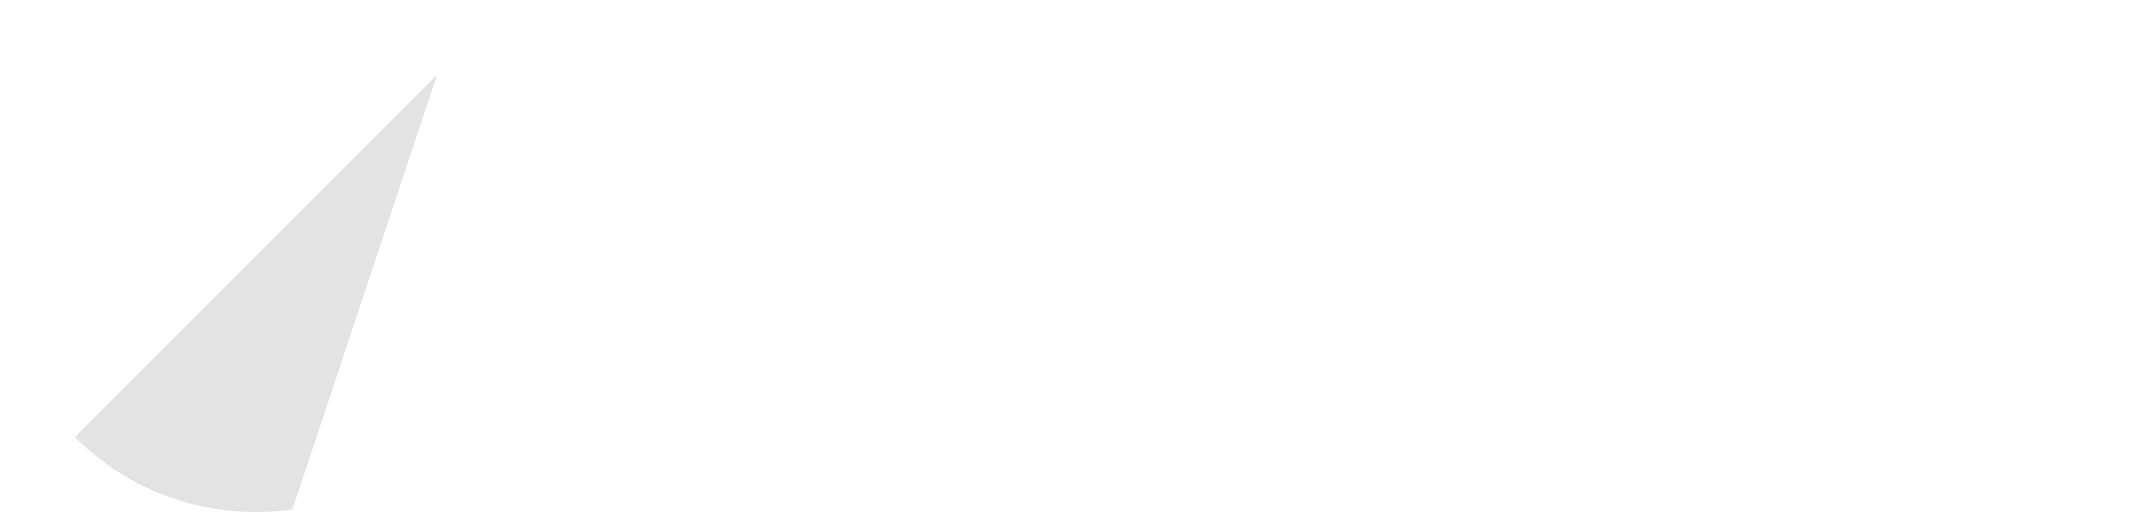 logo-shipmondo-white